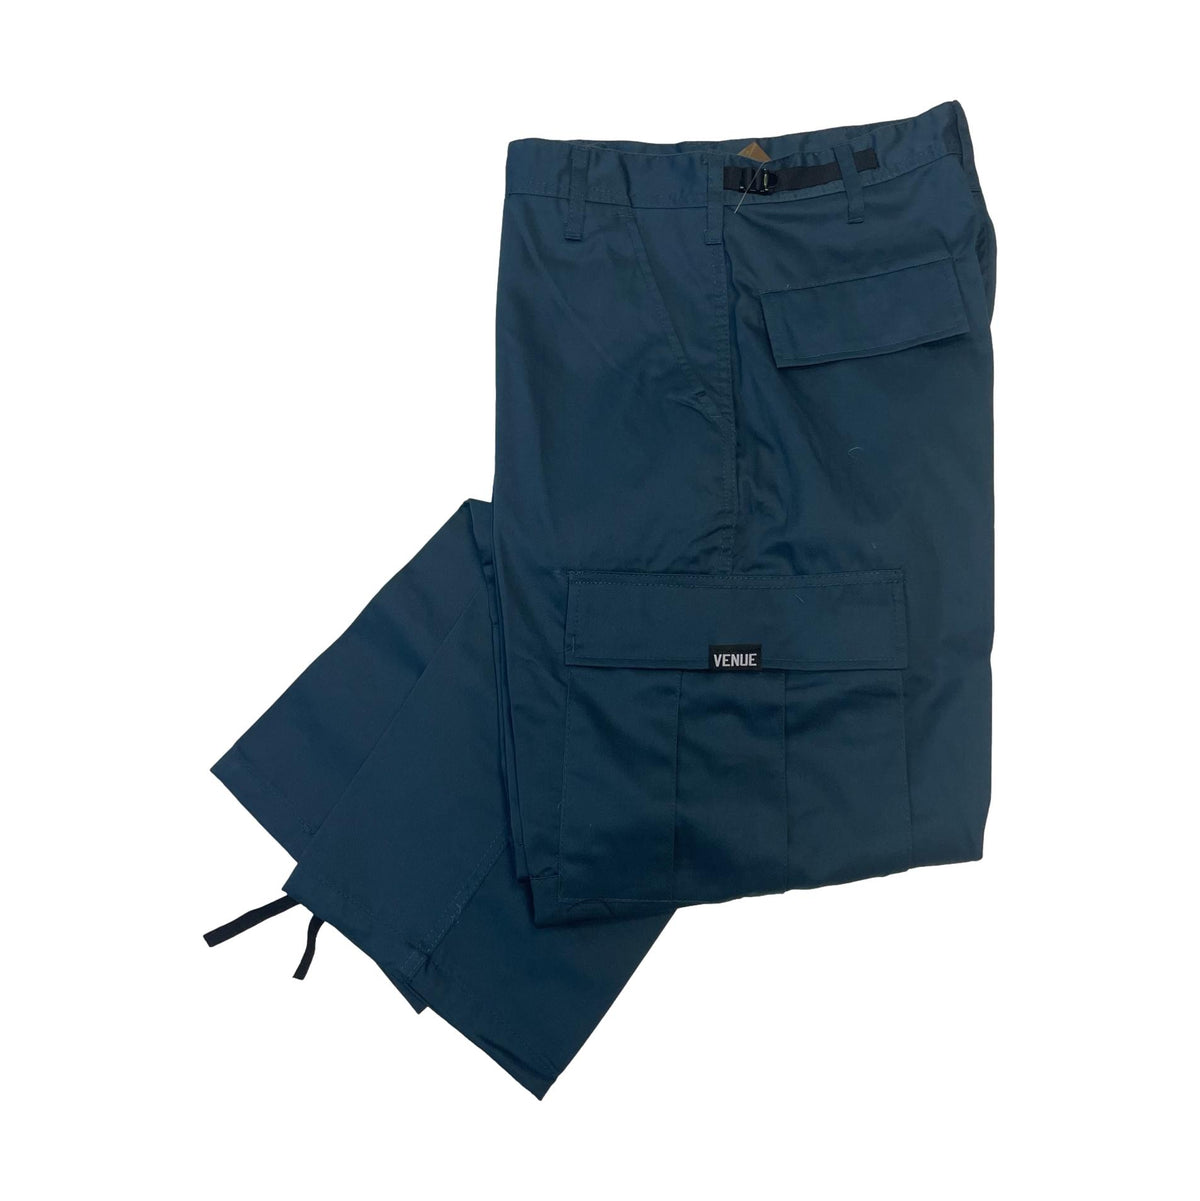 Venue Cargo Pants - Cadet Blue